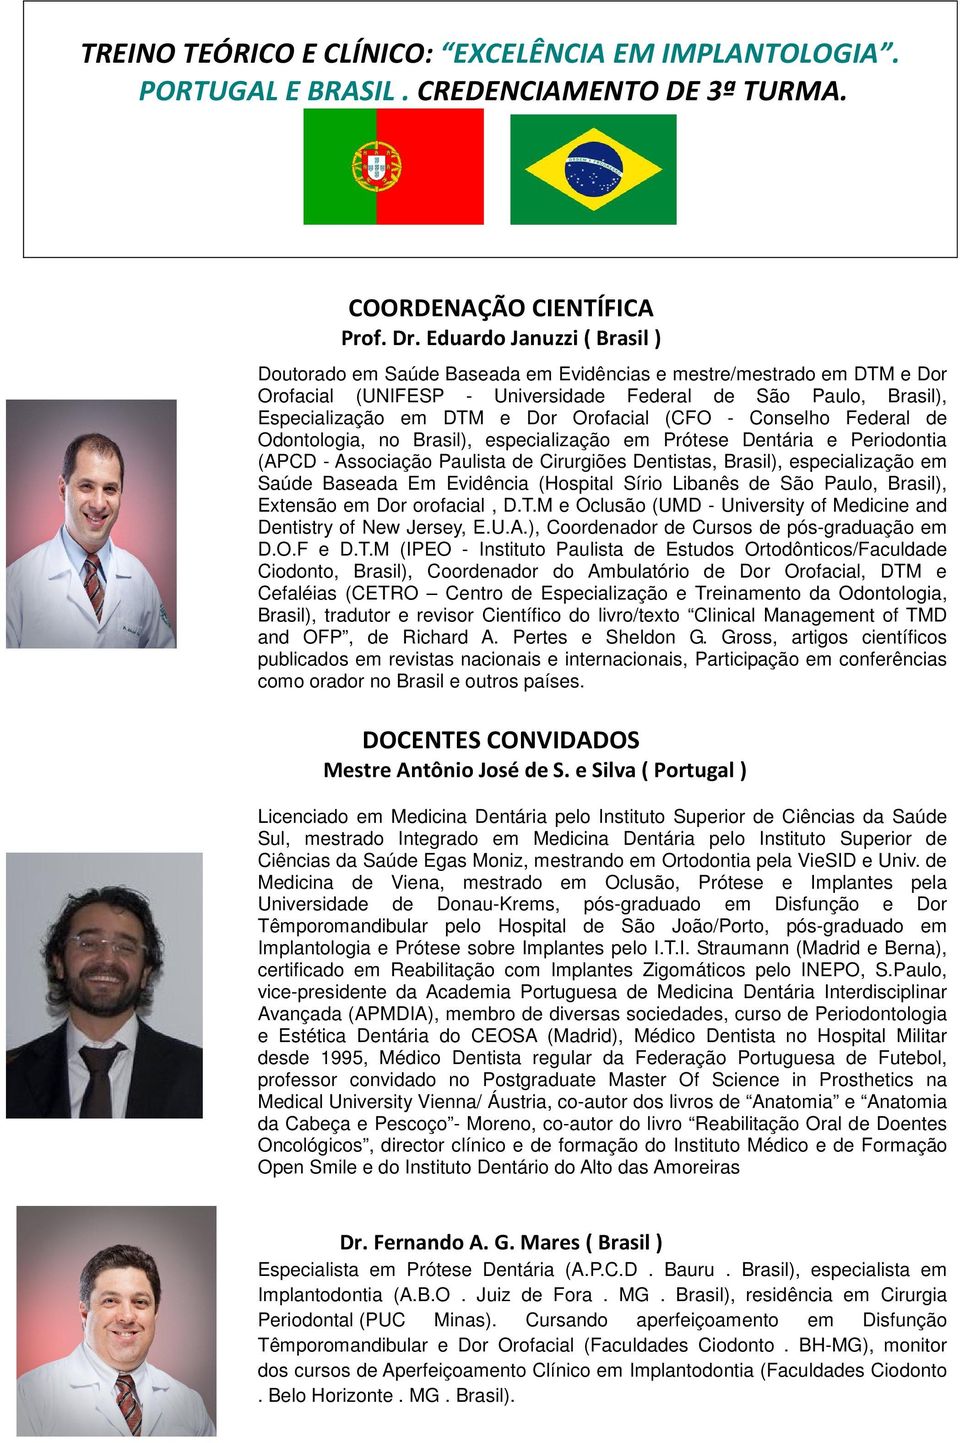 Orofacial (CFO - Conselho Federal de Odontologia, no Brasil), especialização em Prótese Dentária e Periodontia (APCD - Associação Paulista de Cirurgiões Dentistas, Brasil), especialização em Saúde